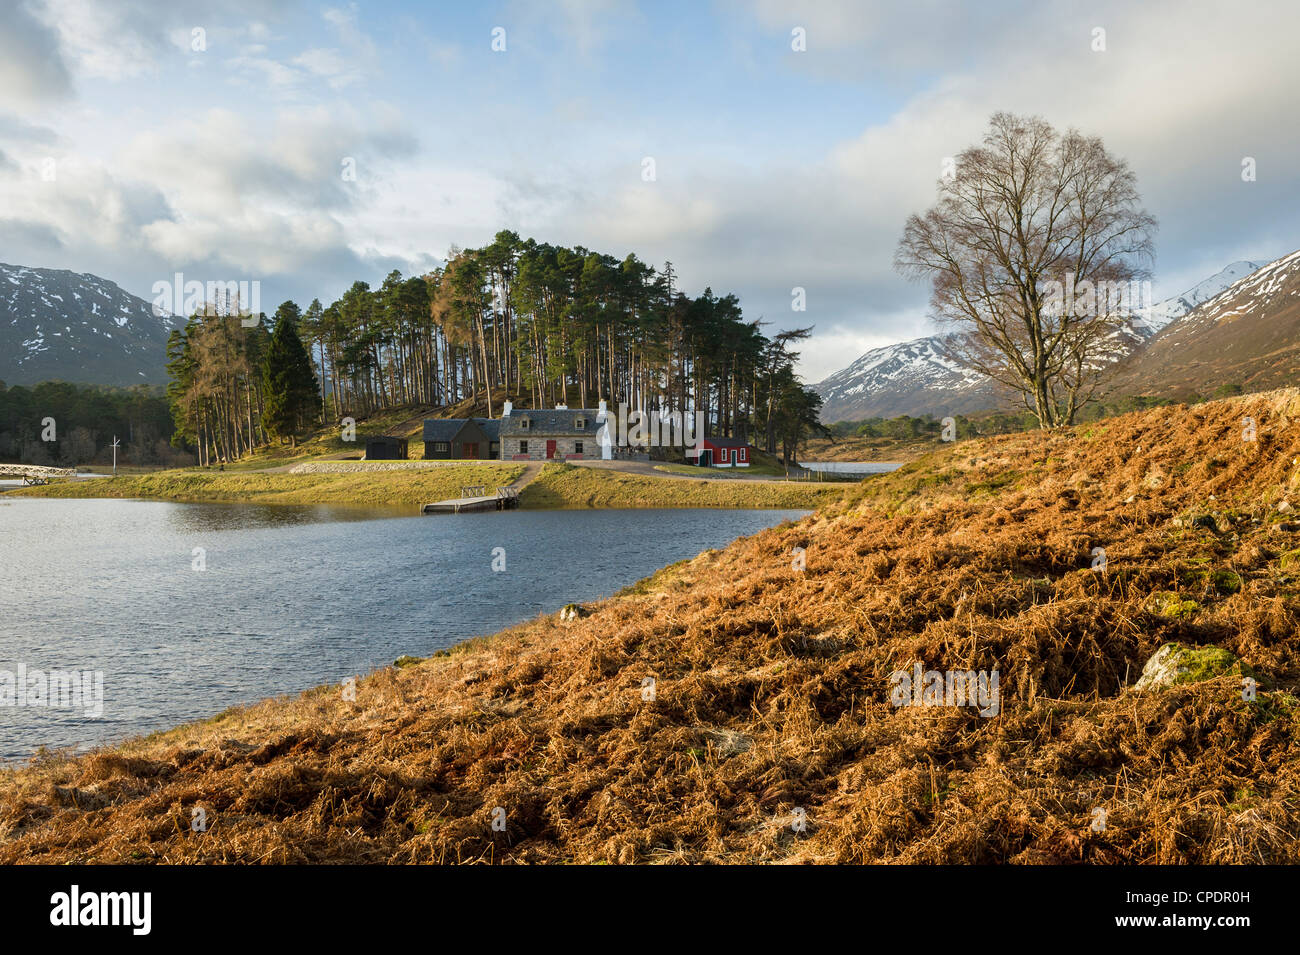 House on island, Glen Affric, Highlands, Scotland, UK Stock Photo